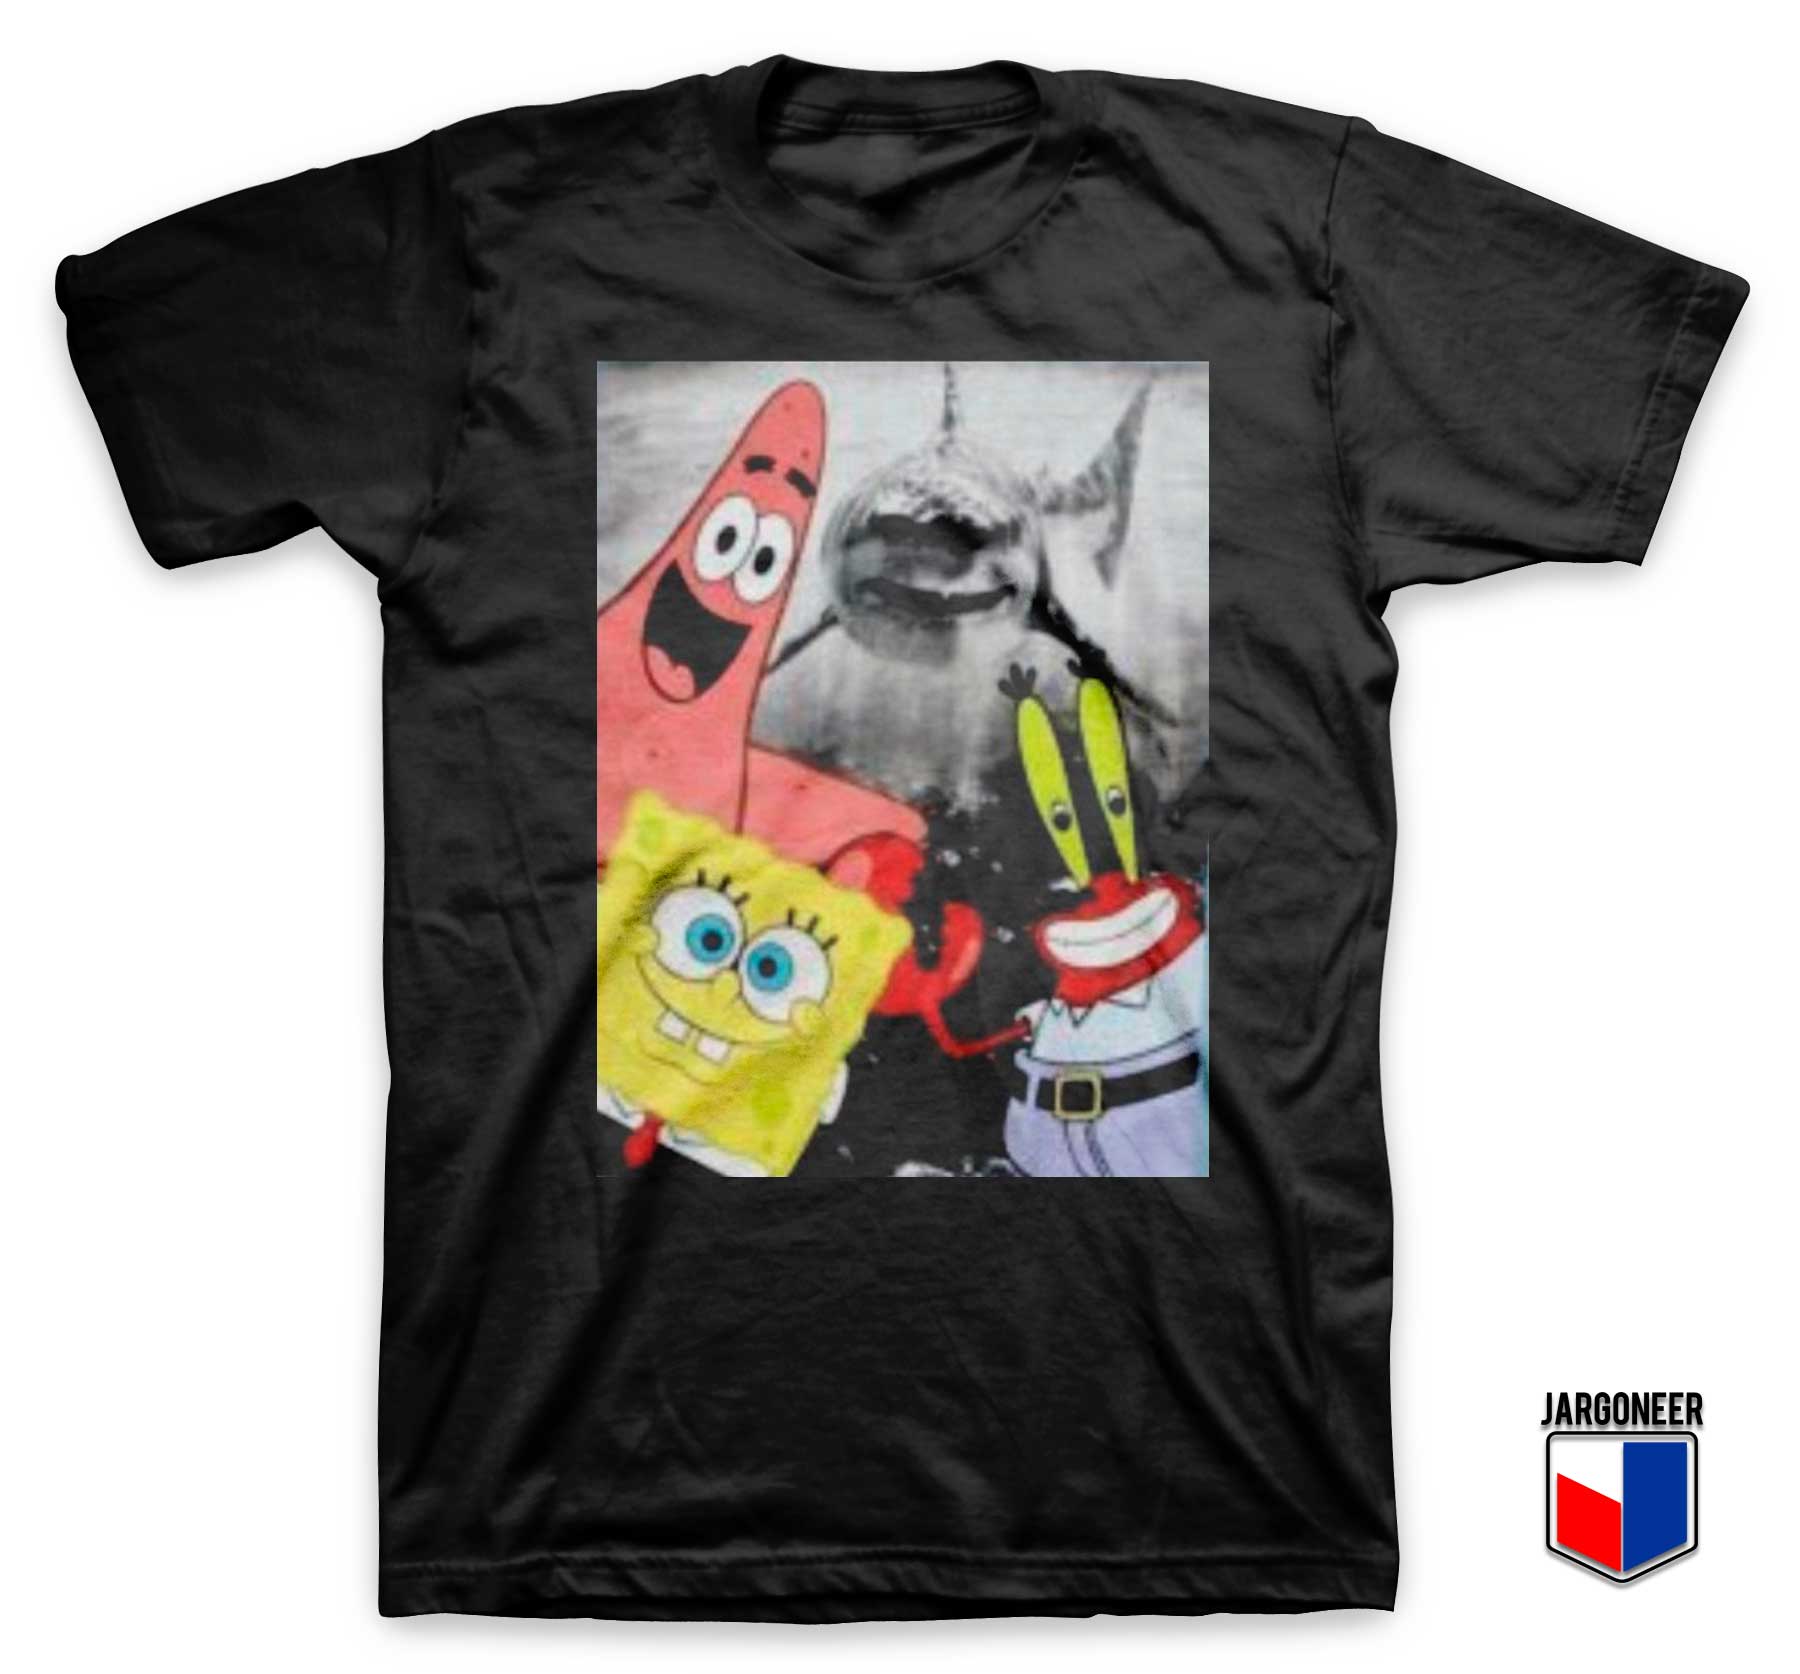 Spongebob Patrick Mr Krabs T Shirt - Shop Unique Graphic Cool Shirt Designs